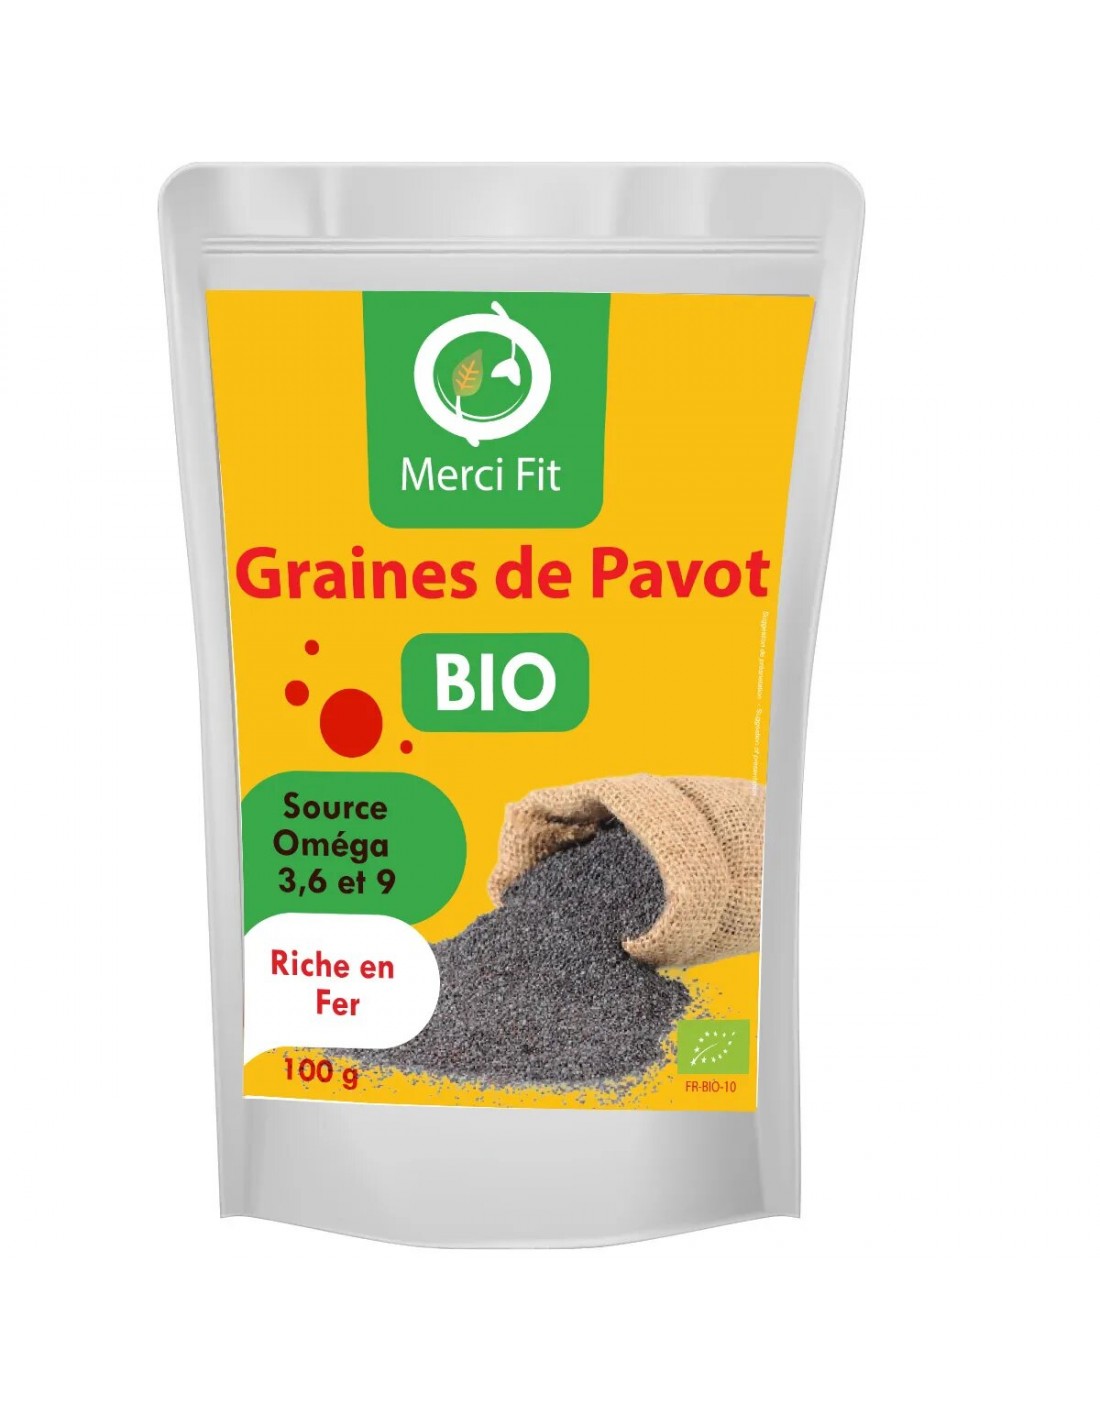 Graines de Pavot Bio 100g Merci Fit